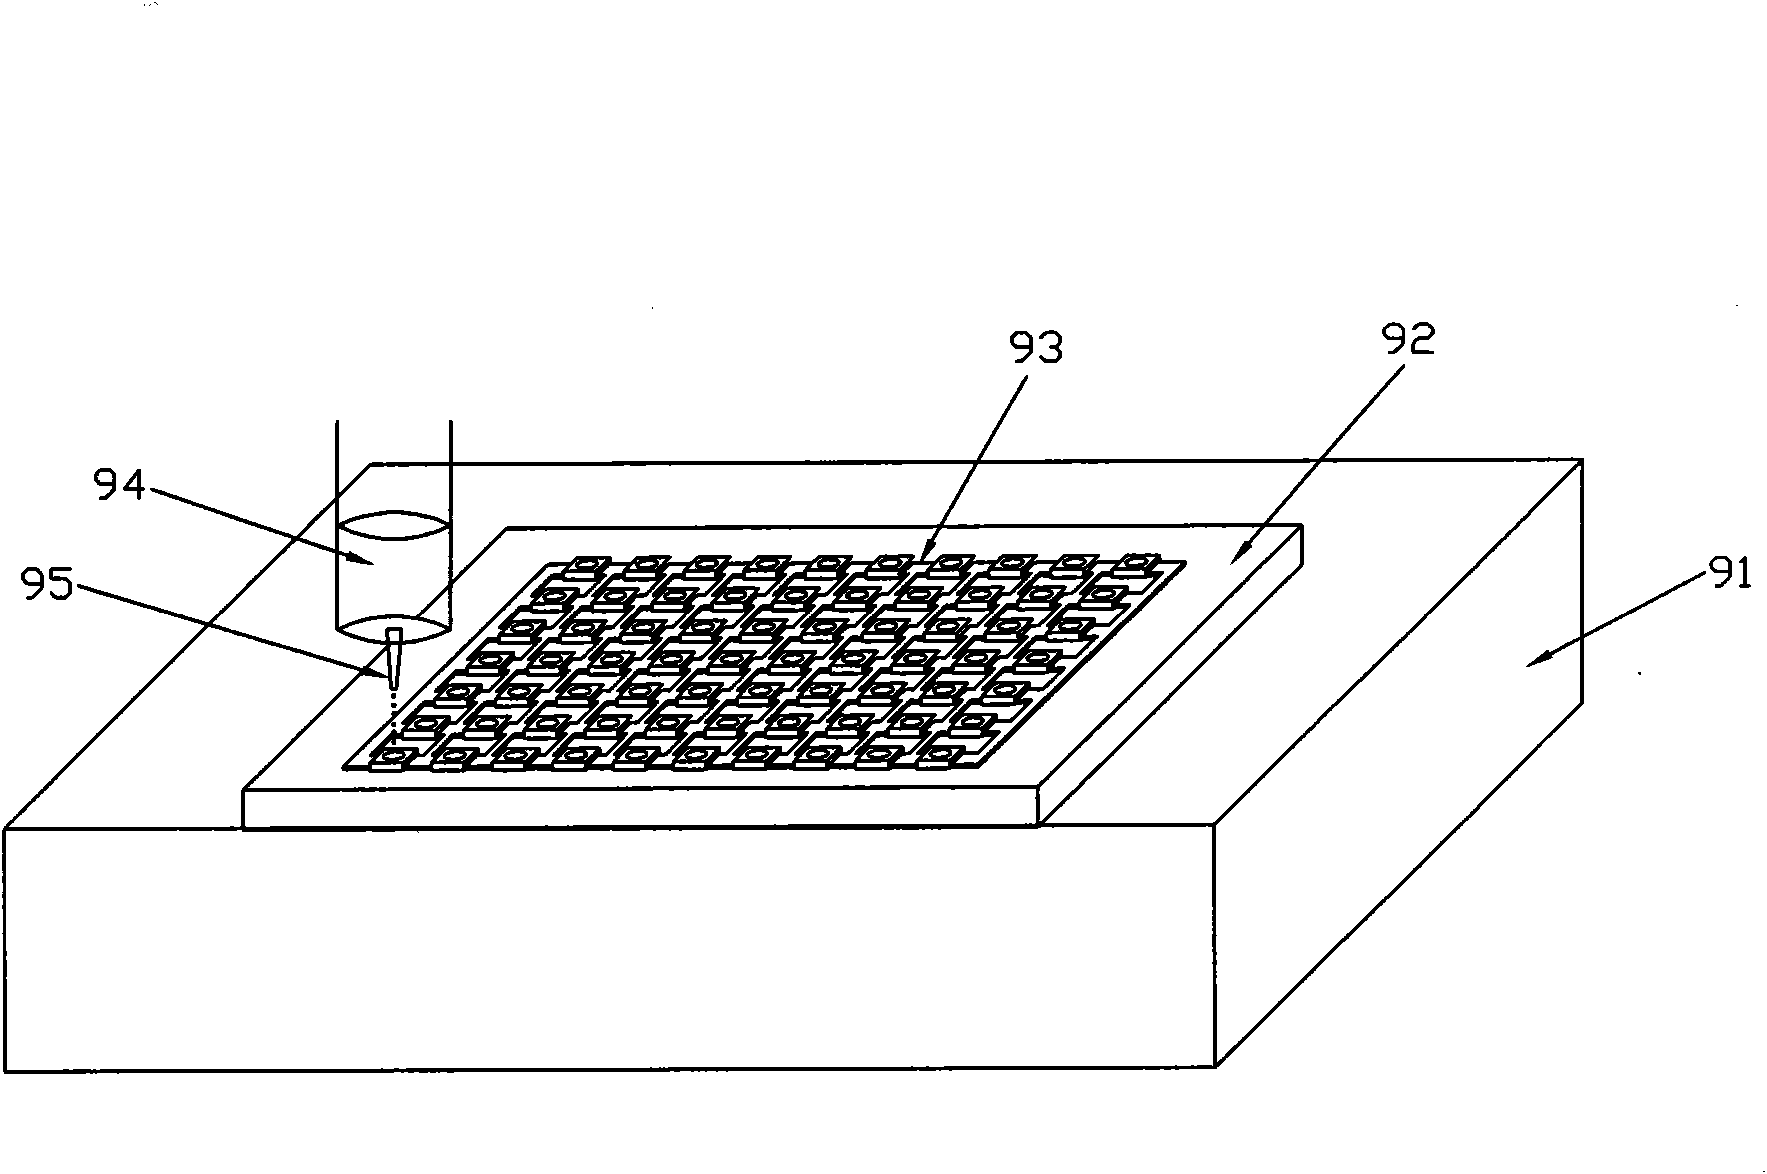 Liquid glue encapsulation device and encapsulation method using same